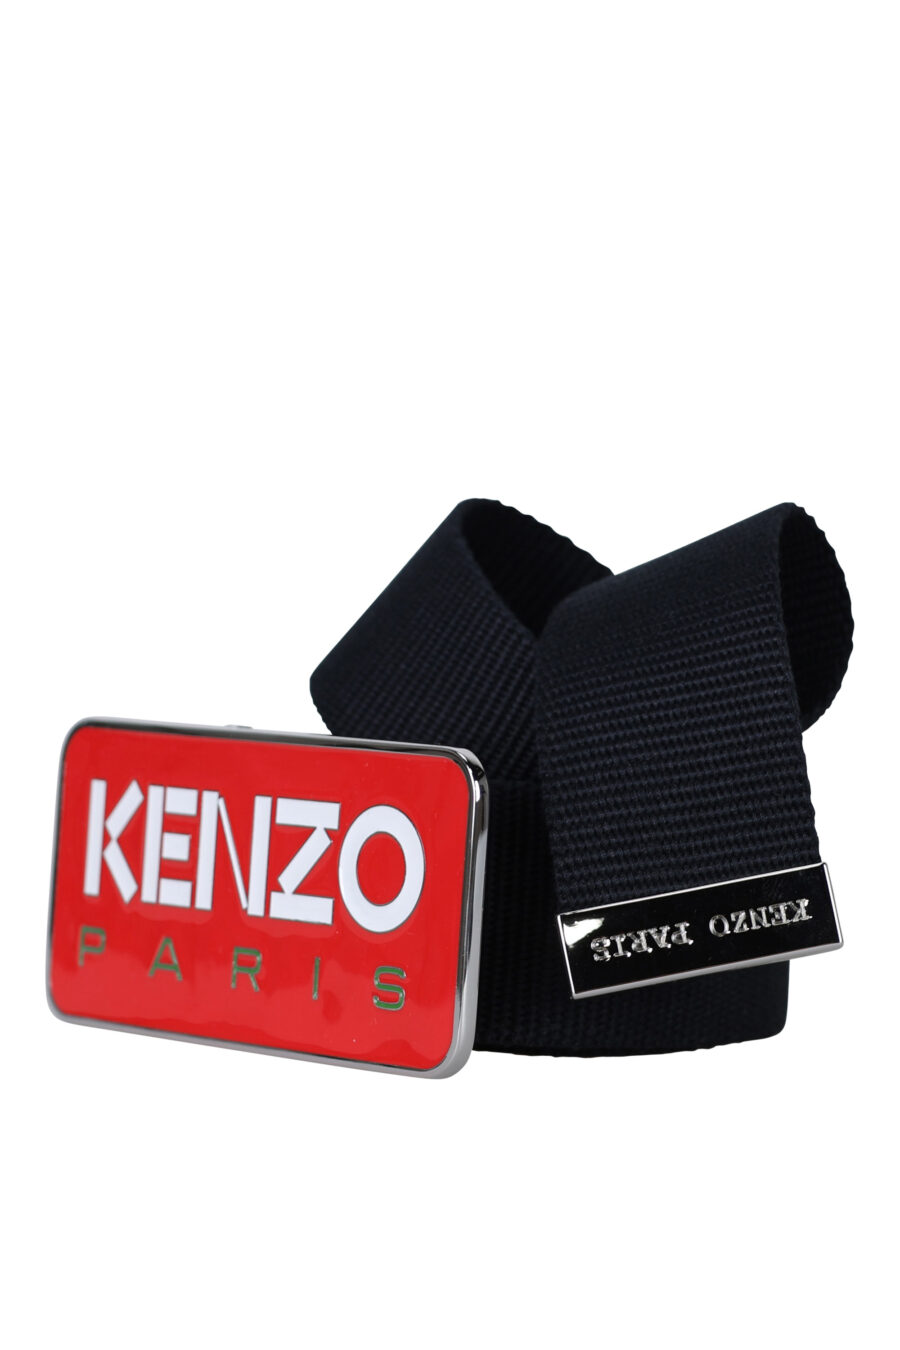 Cinto preto com fivela vermelha com o logótipo "kenzo paris" - 3612230547339 1